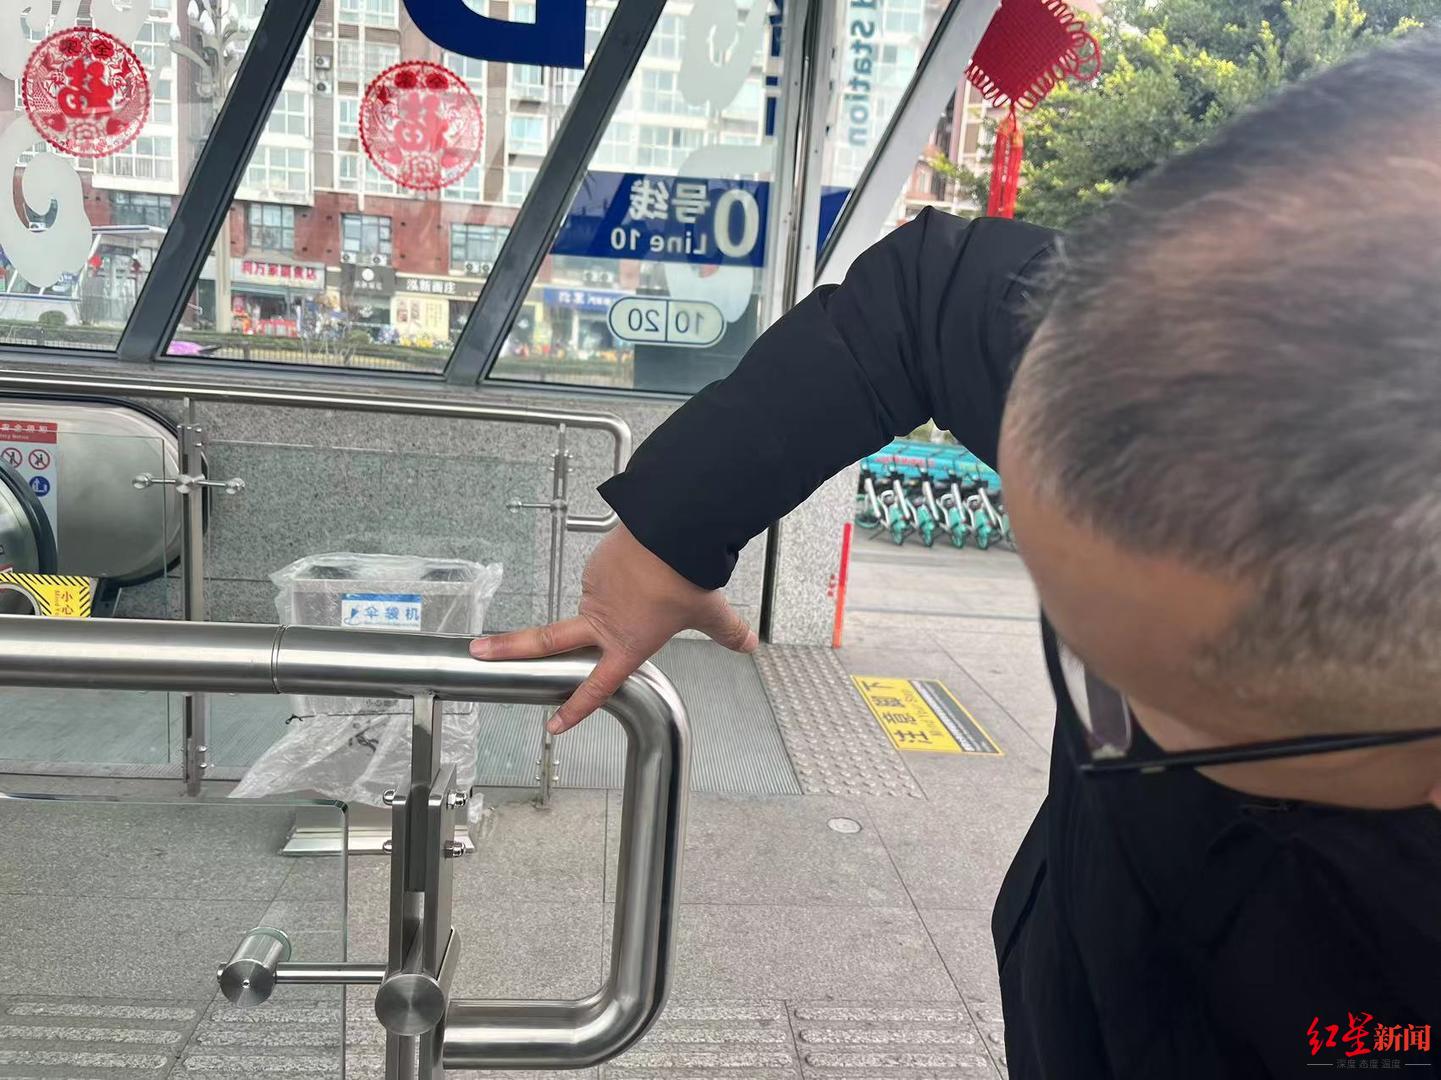 ▲在成都地铁10号线儒林路站B口，进出口的扶手盲文，可以有效为视障朋友指路